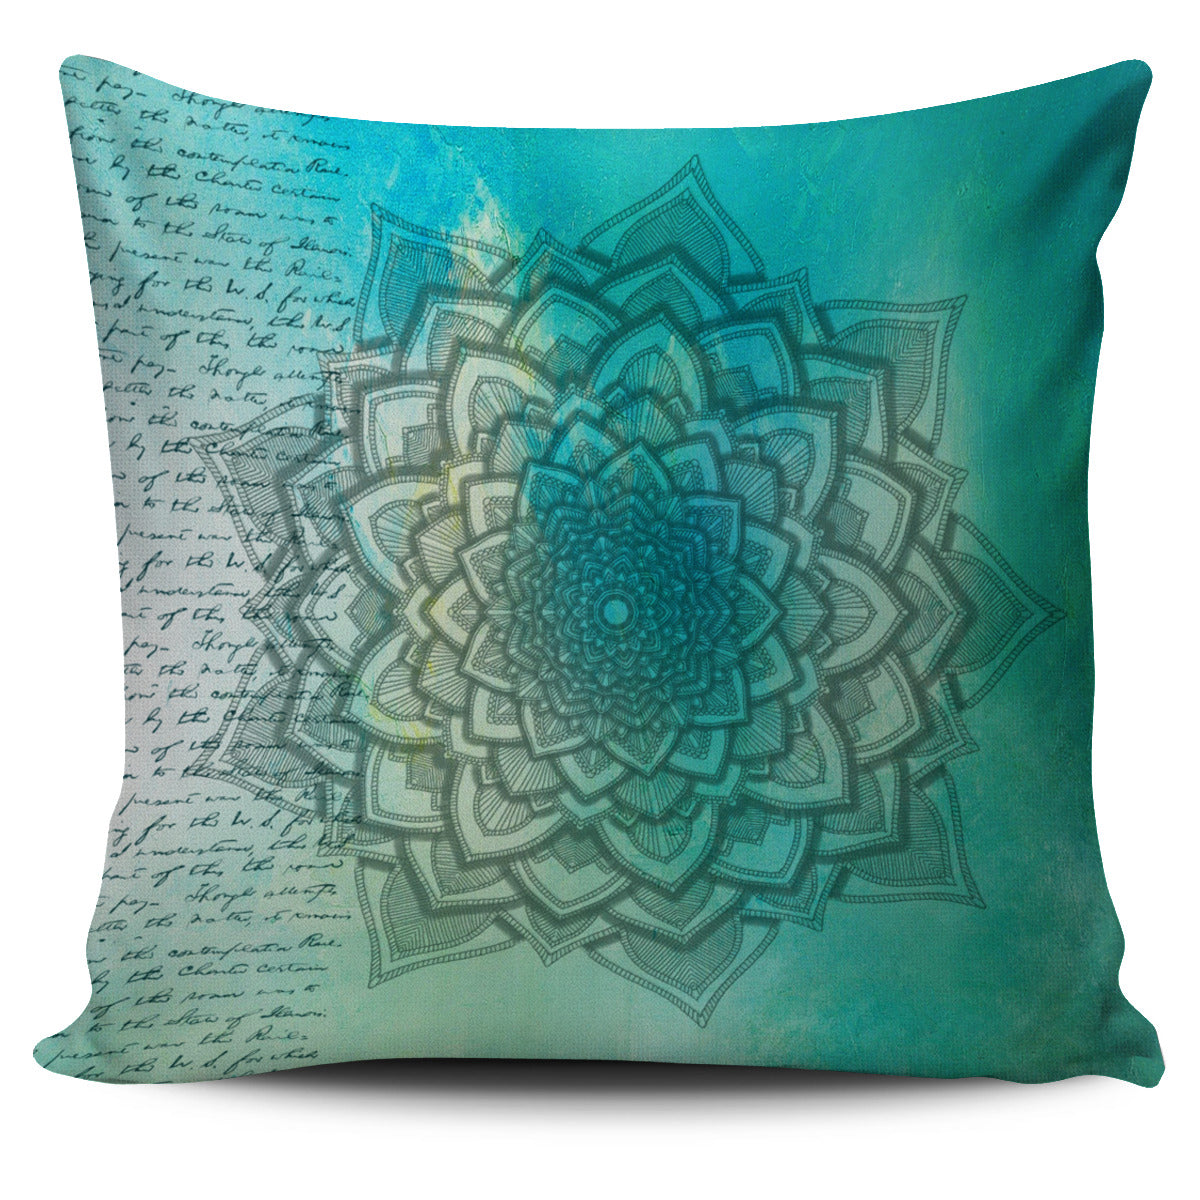 Teal Mandala Pillow Cover